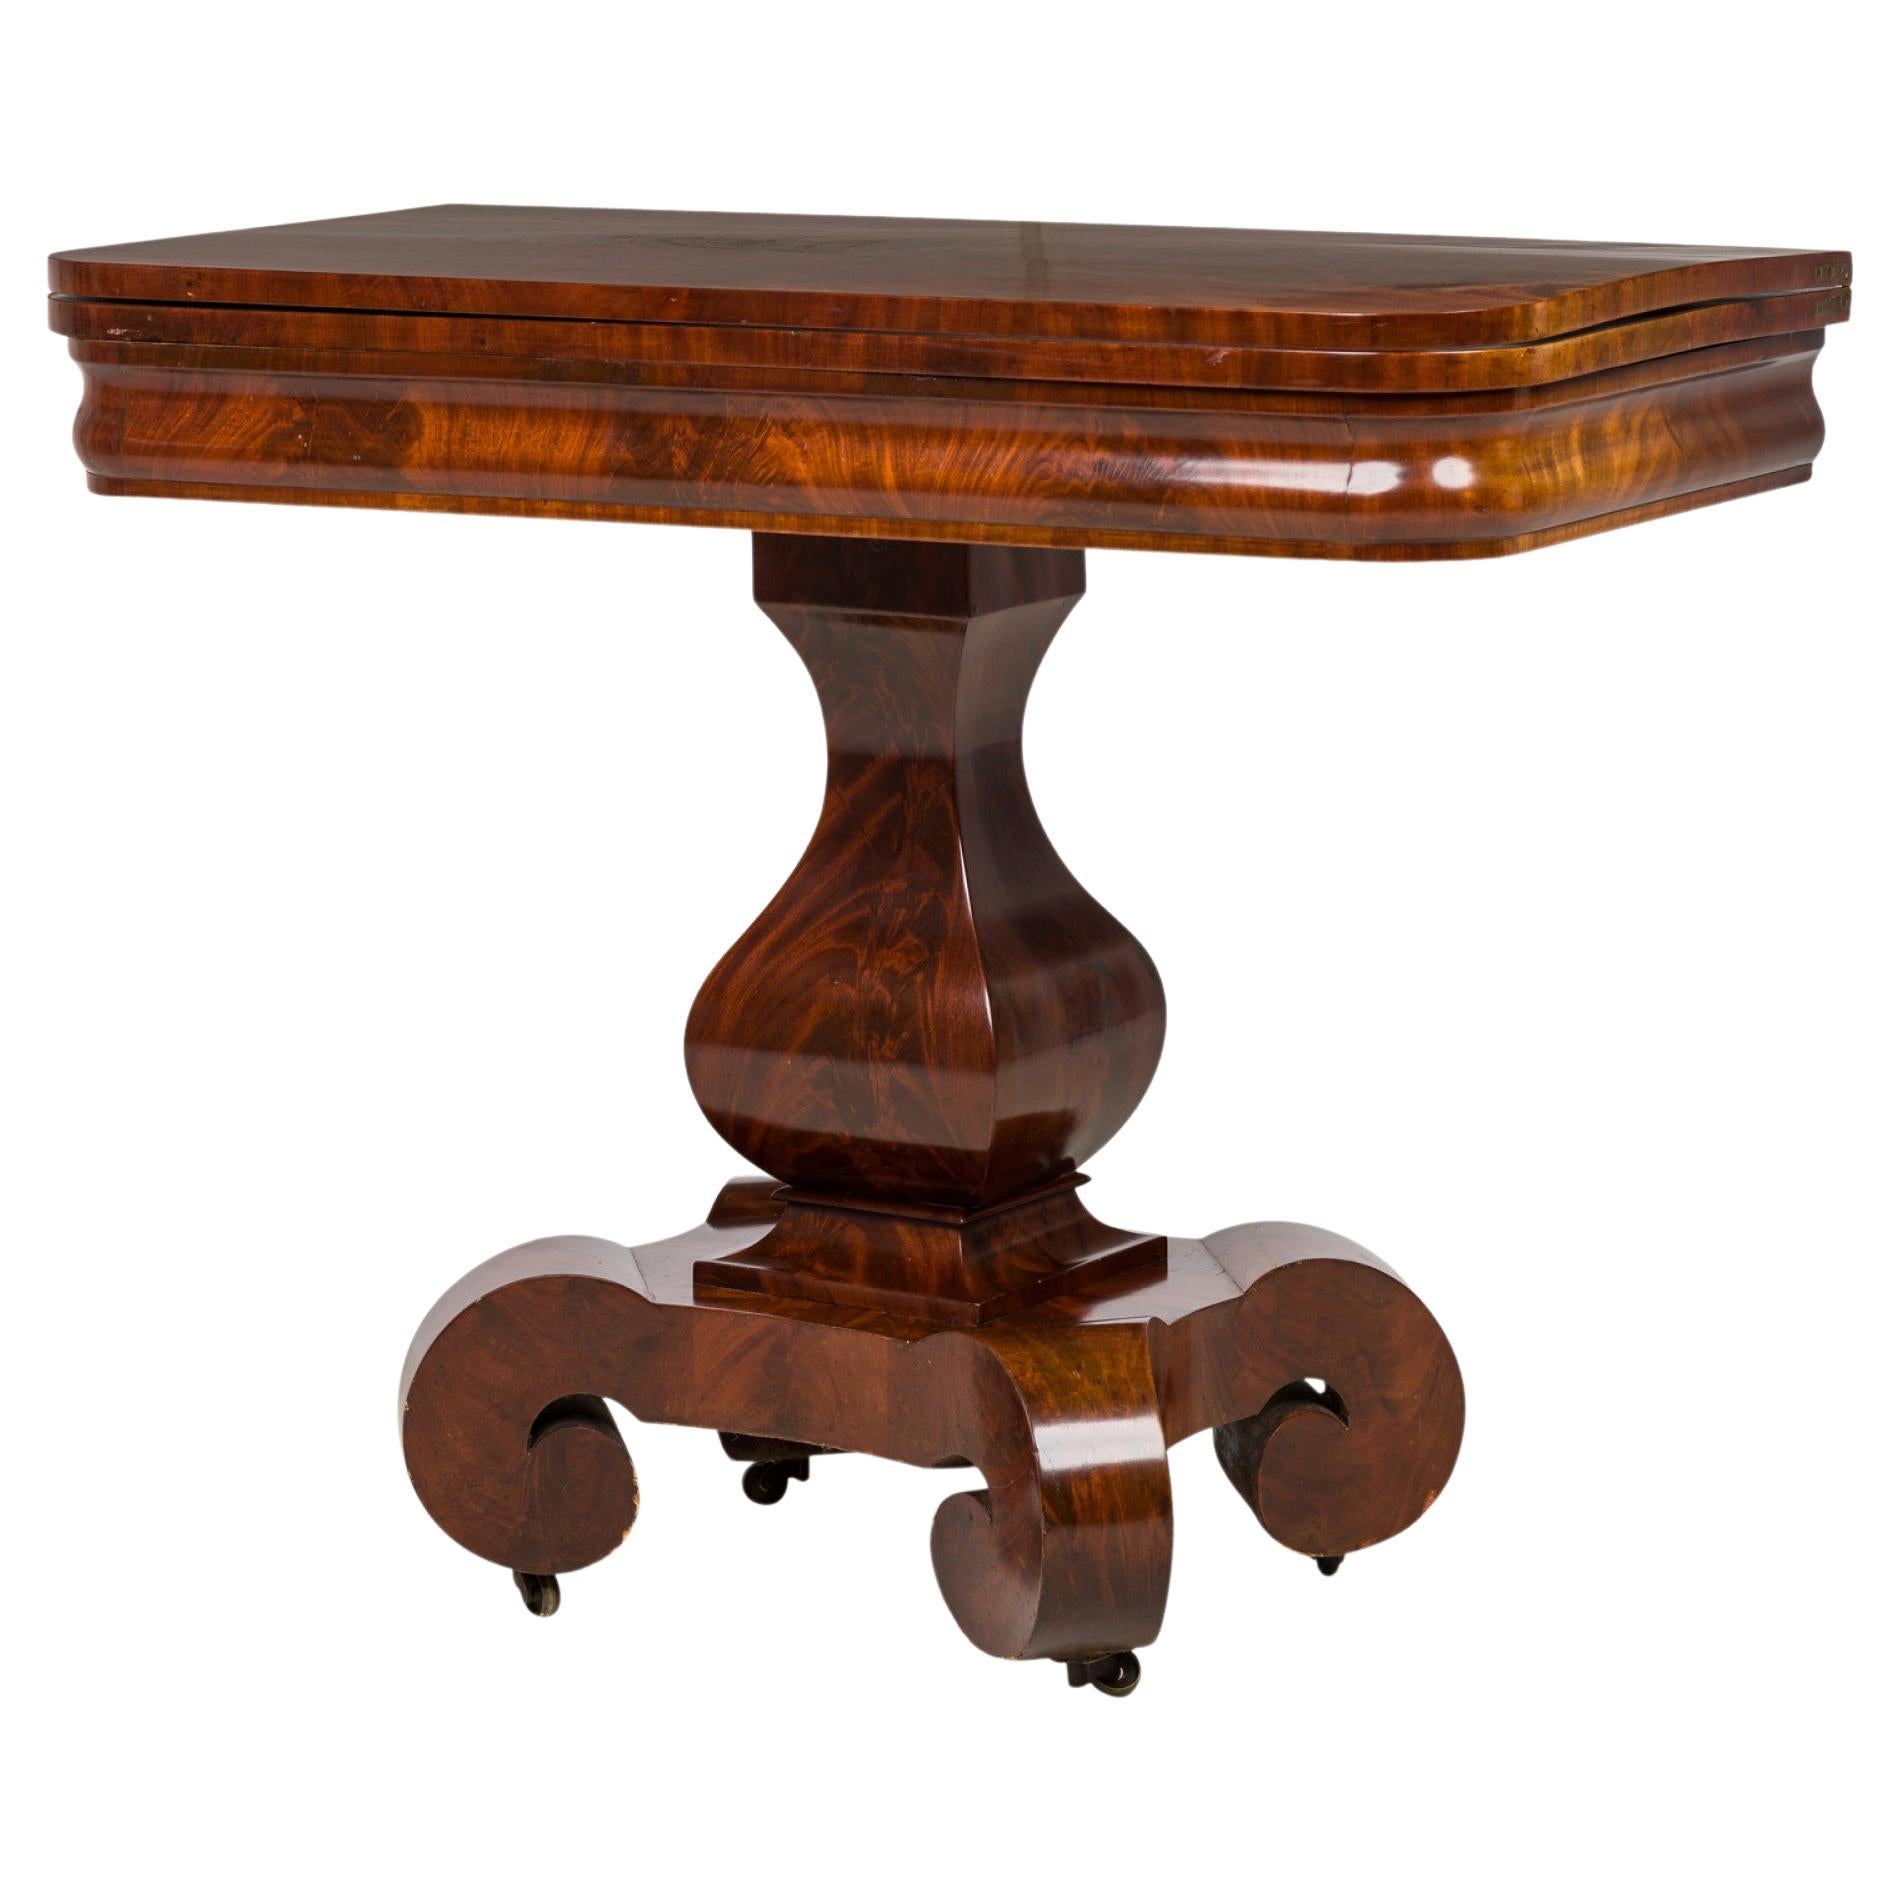 Table d'appoint rectangulaire extensible en bois de style Empire américain avec placage en acajou